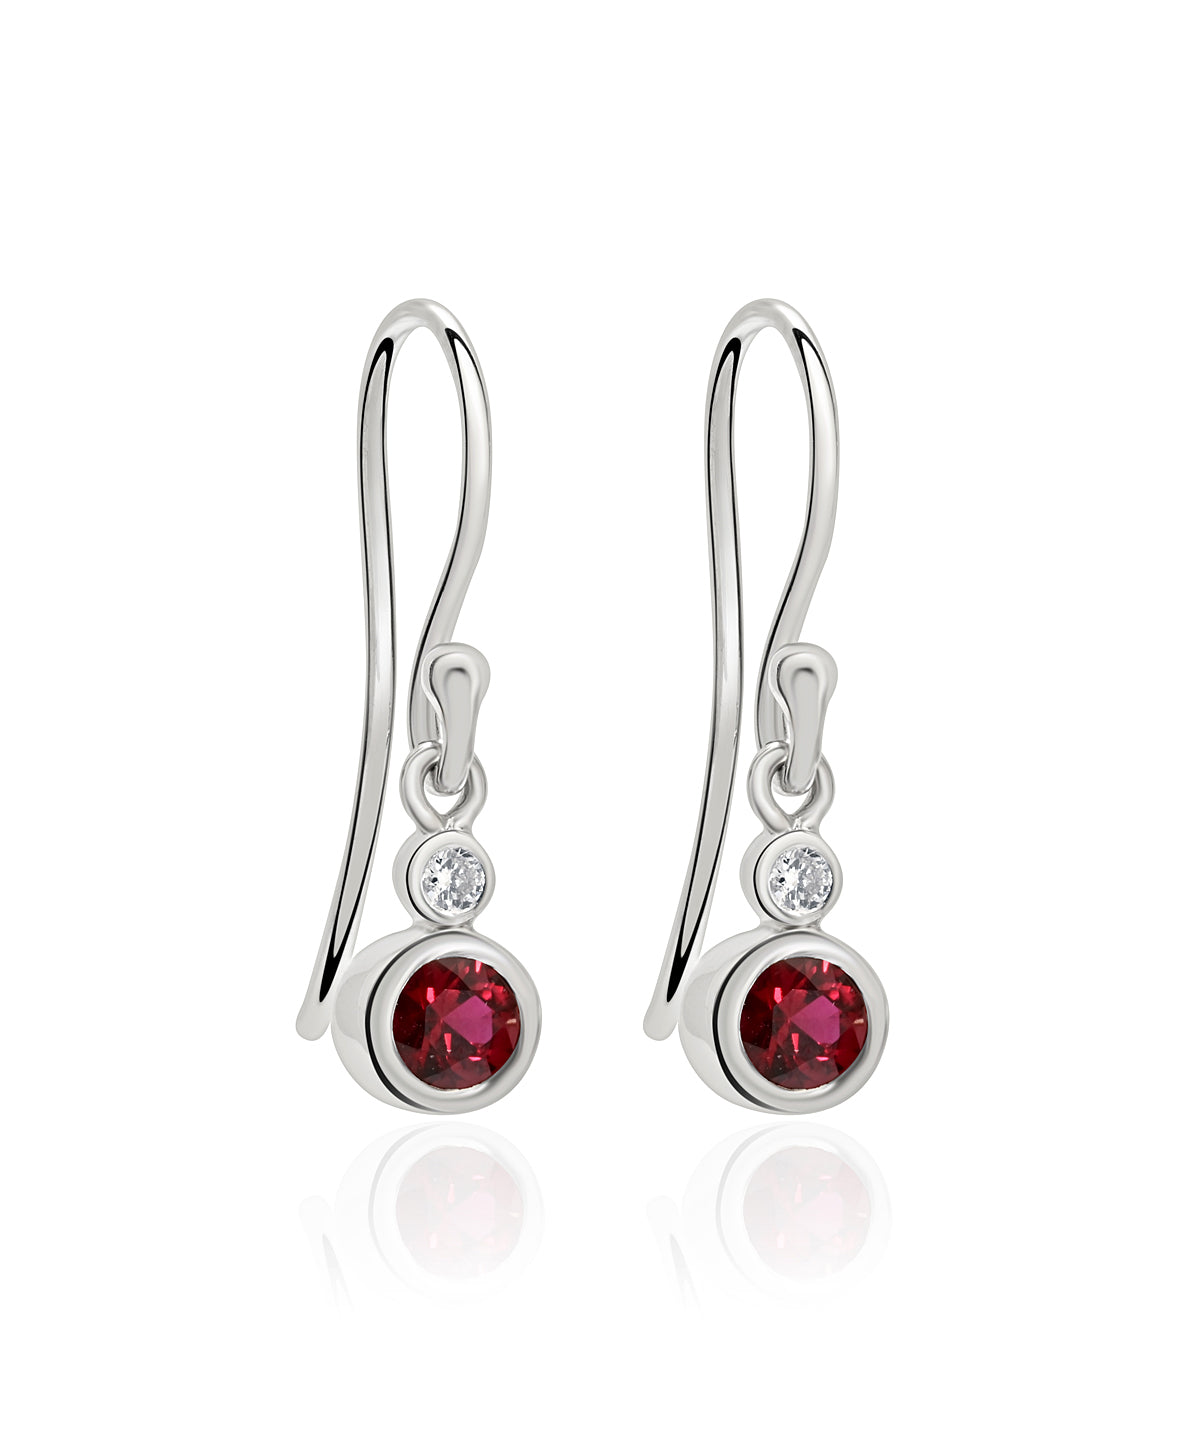 14K White Gold Bezel Set Ruby and Diamond Dangle Earrings